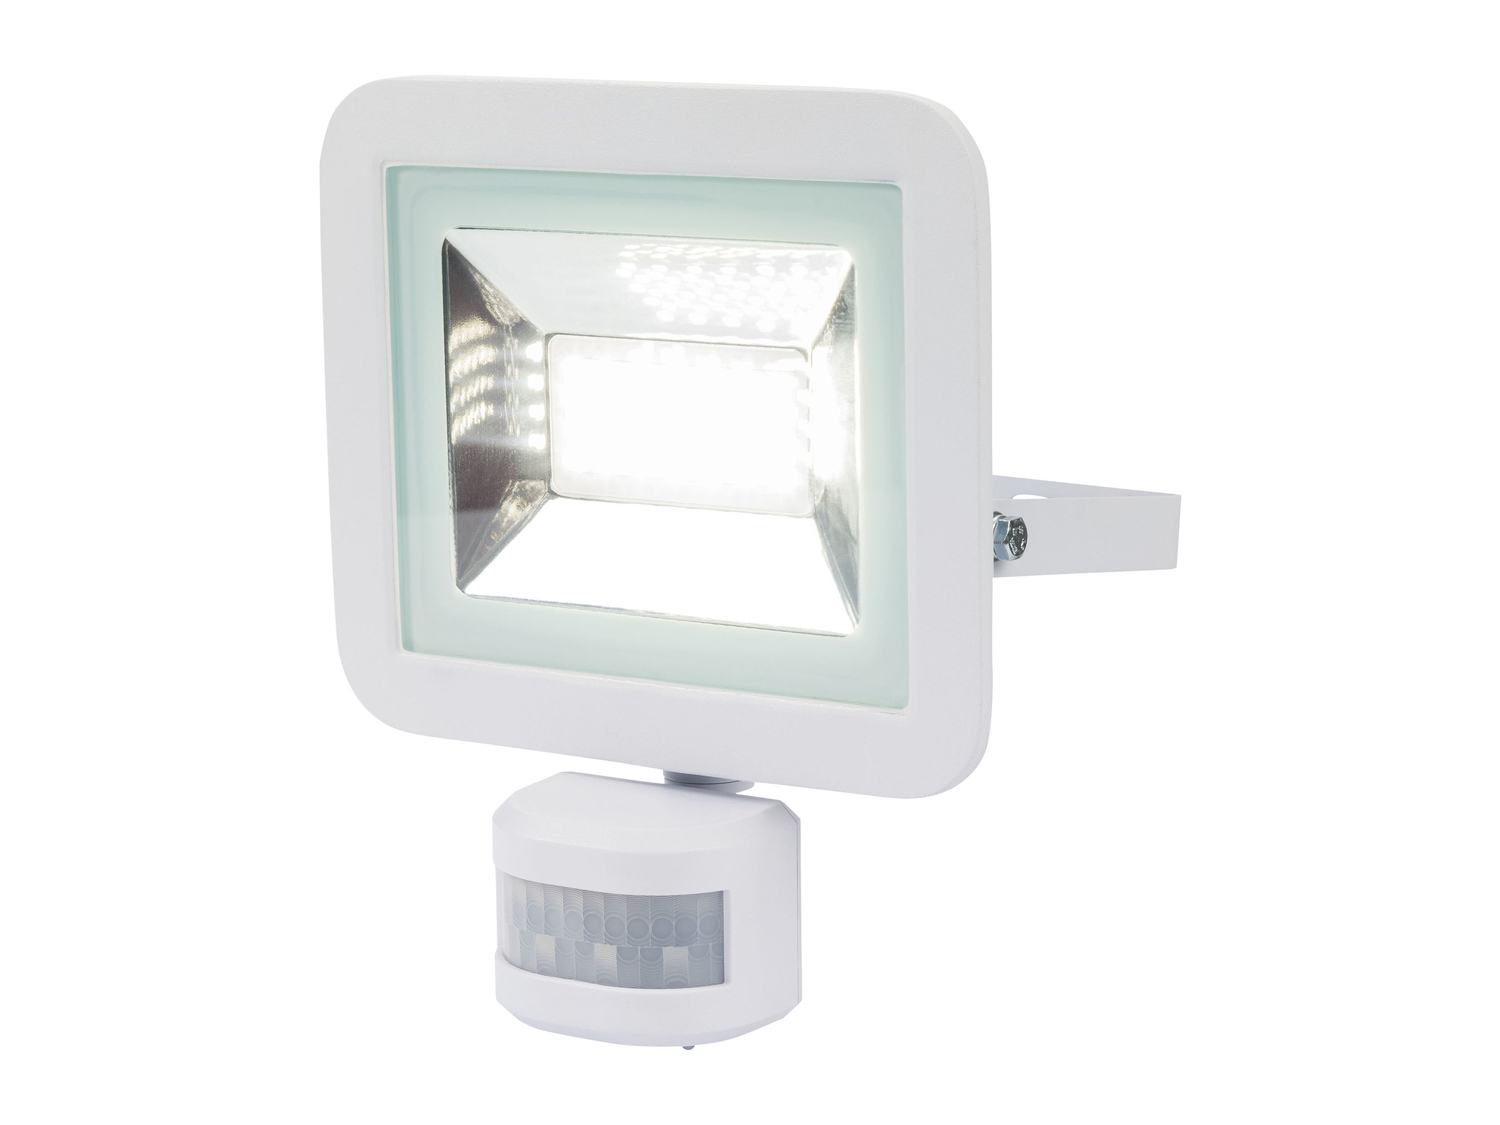 Faro LED da esterni Livarno Lux, prezzo 14.99 € 
- Sensore crepuscolare regolabile ...